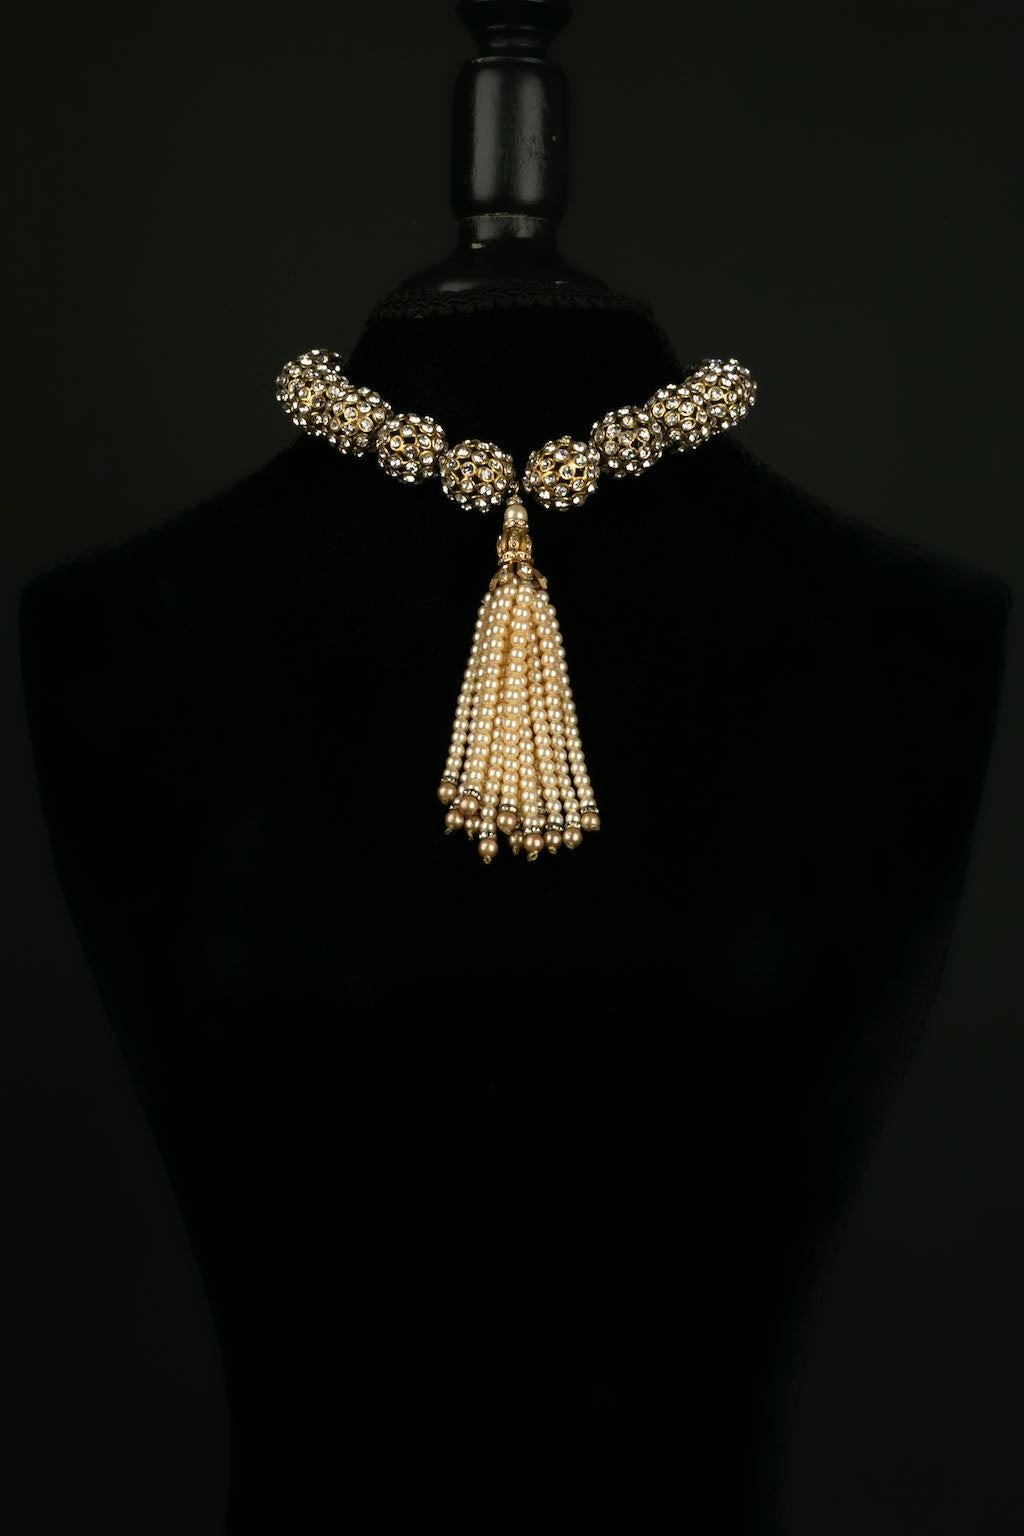 Chanel -(Made in France) Collier court composé de perles en métal doré pavées de strass, retenant un pompon de perles nacrées. Modèle rare de la collection 1983.

Informations complémentaires : 
Dimensions : Longueur : 43 cm - Largeur : 13 cm